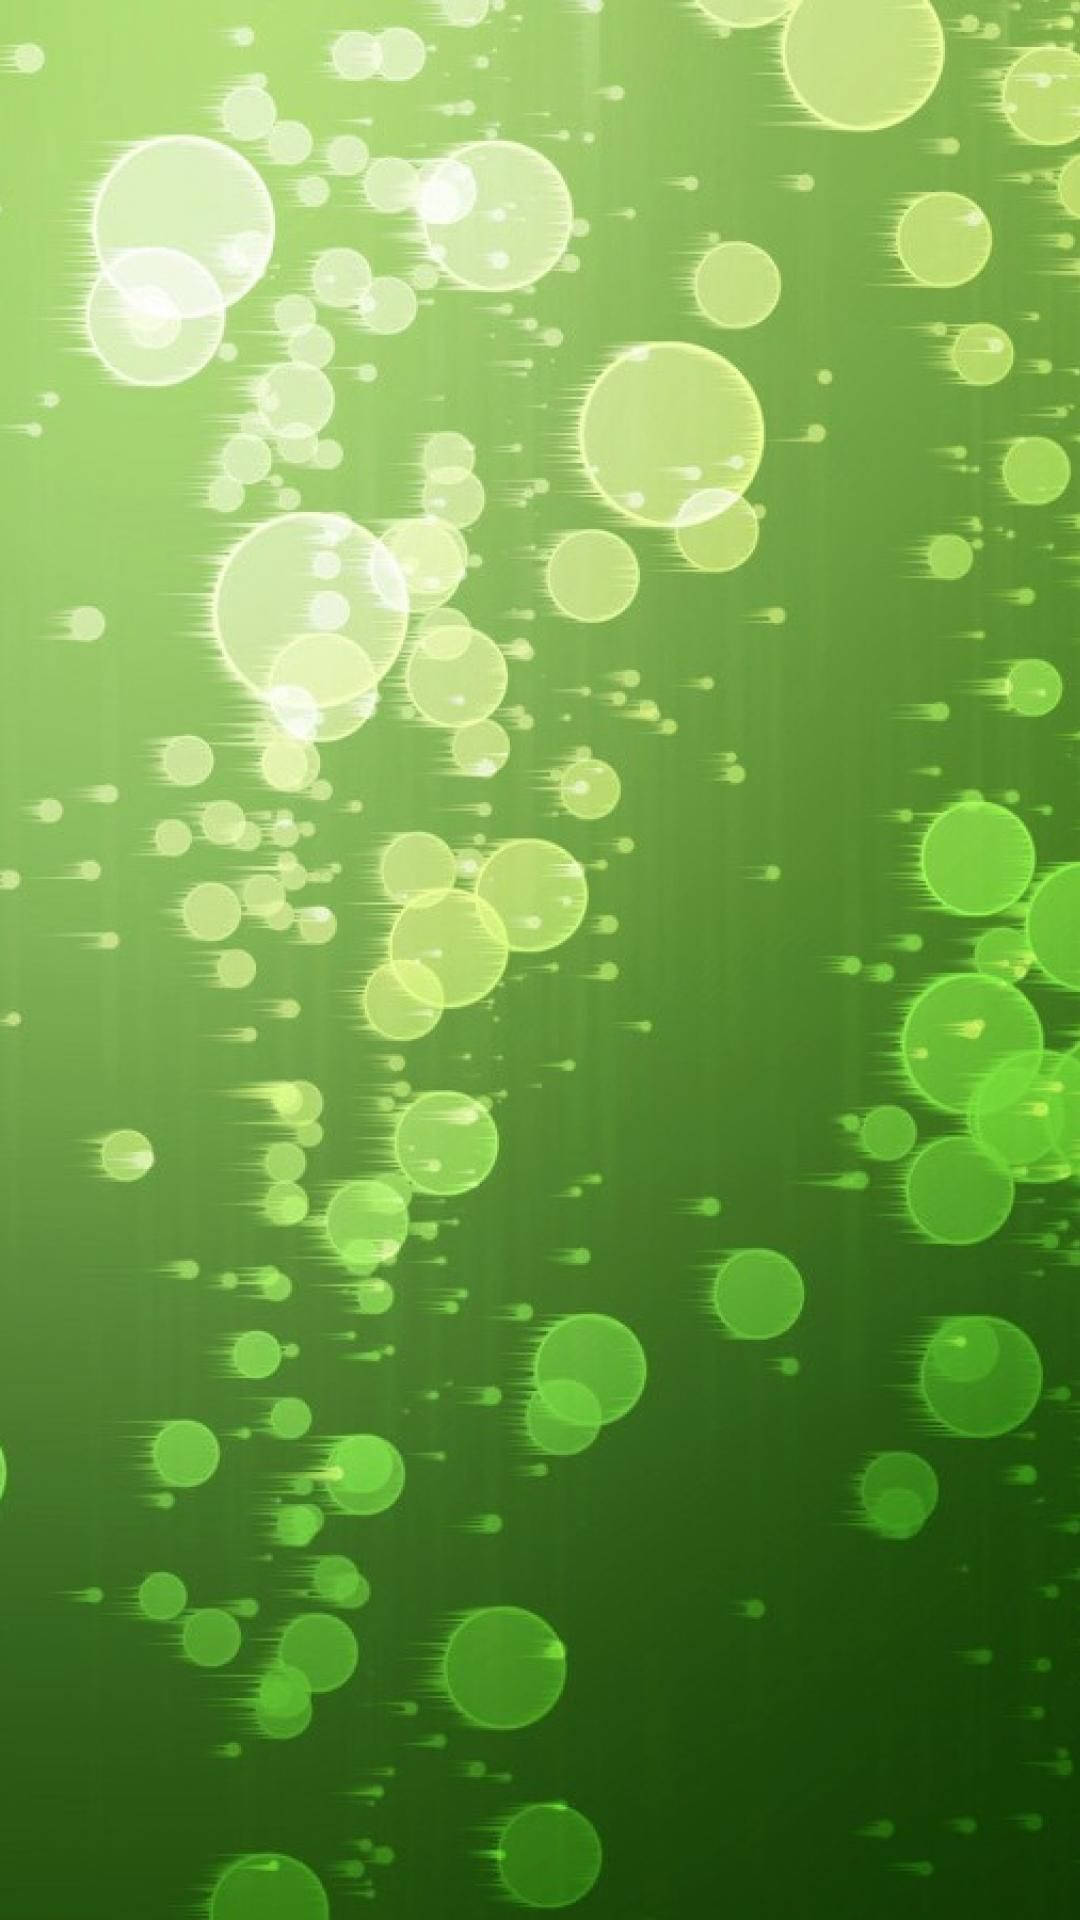 Lysegrønne Bobler bringer liv og glæde til dine omgivelser. Wallpaper